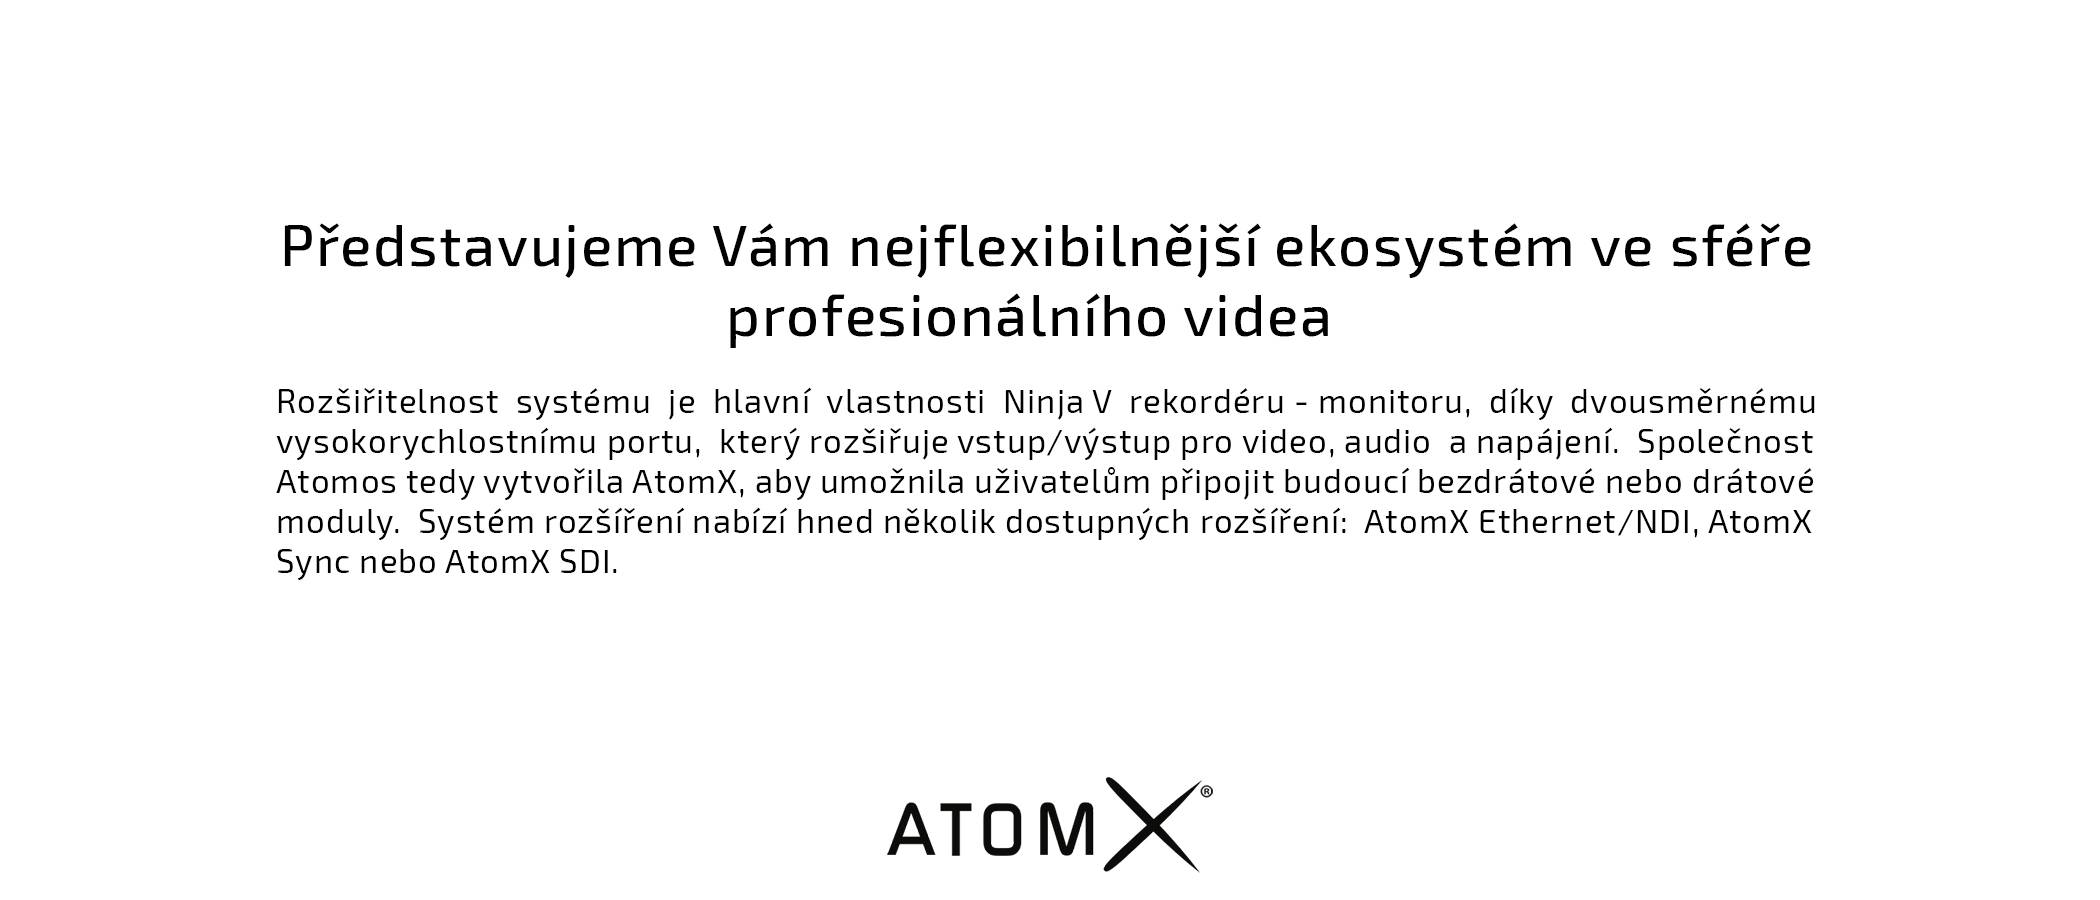 film-technika-atomos-atomx-sdi-modul-pro-ninja-v-systém-rozšíření